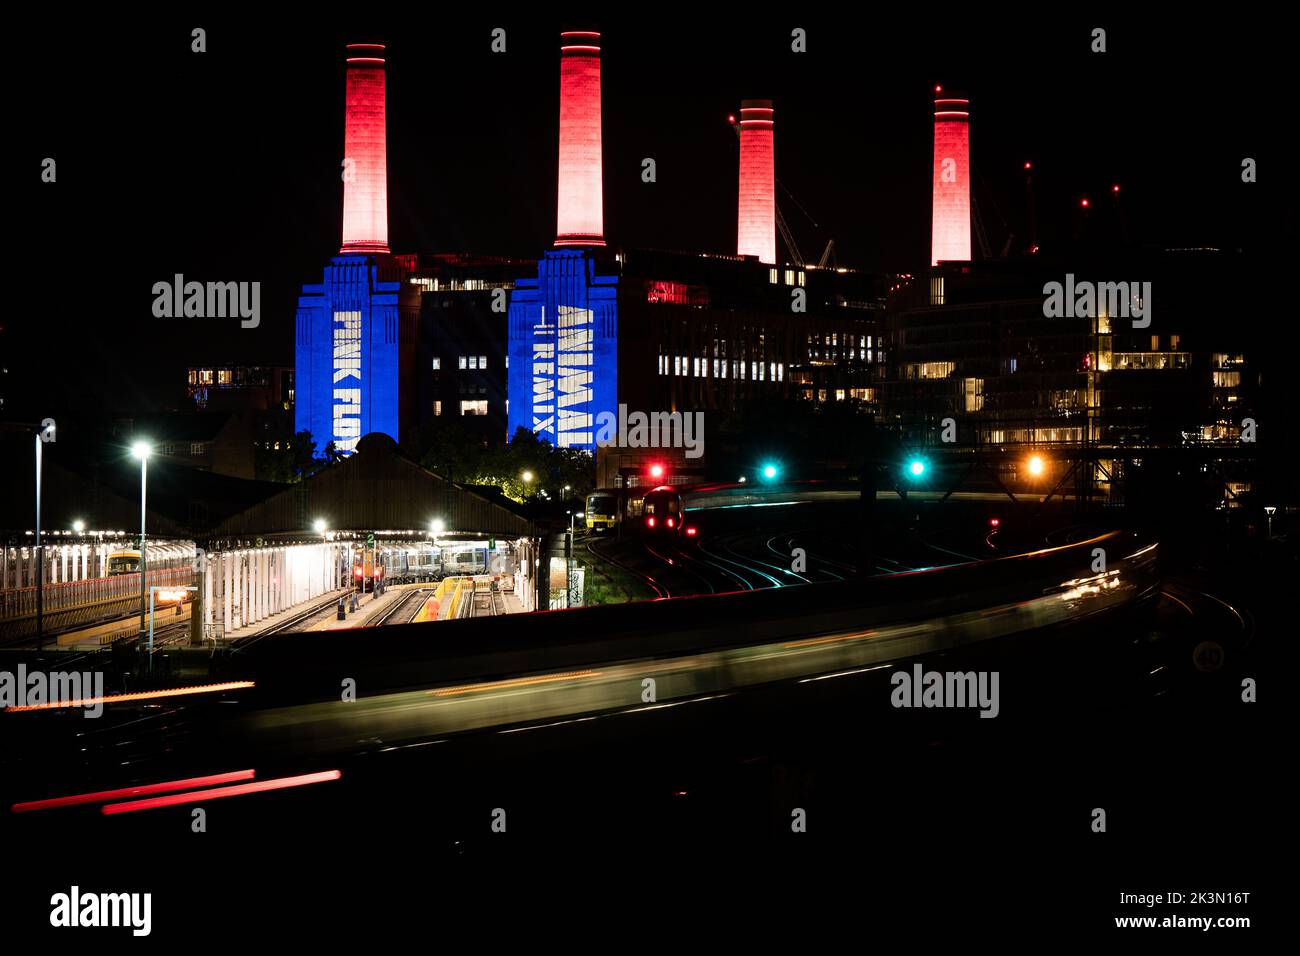 La centrale elettrica di Battersea nel sud di Londra è illuminata durante una prova di un espositore di luci per segnare il rilascio di Pink Floyd's Animals 2018 Remix. Data immagine: Martedì 27 settembre 2022. Foto Stock